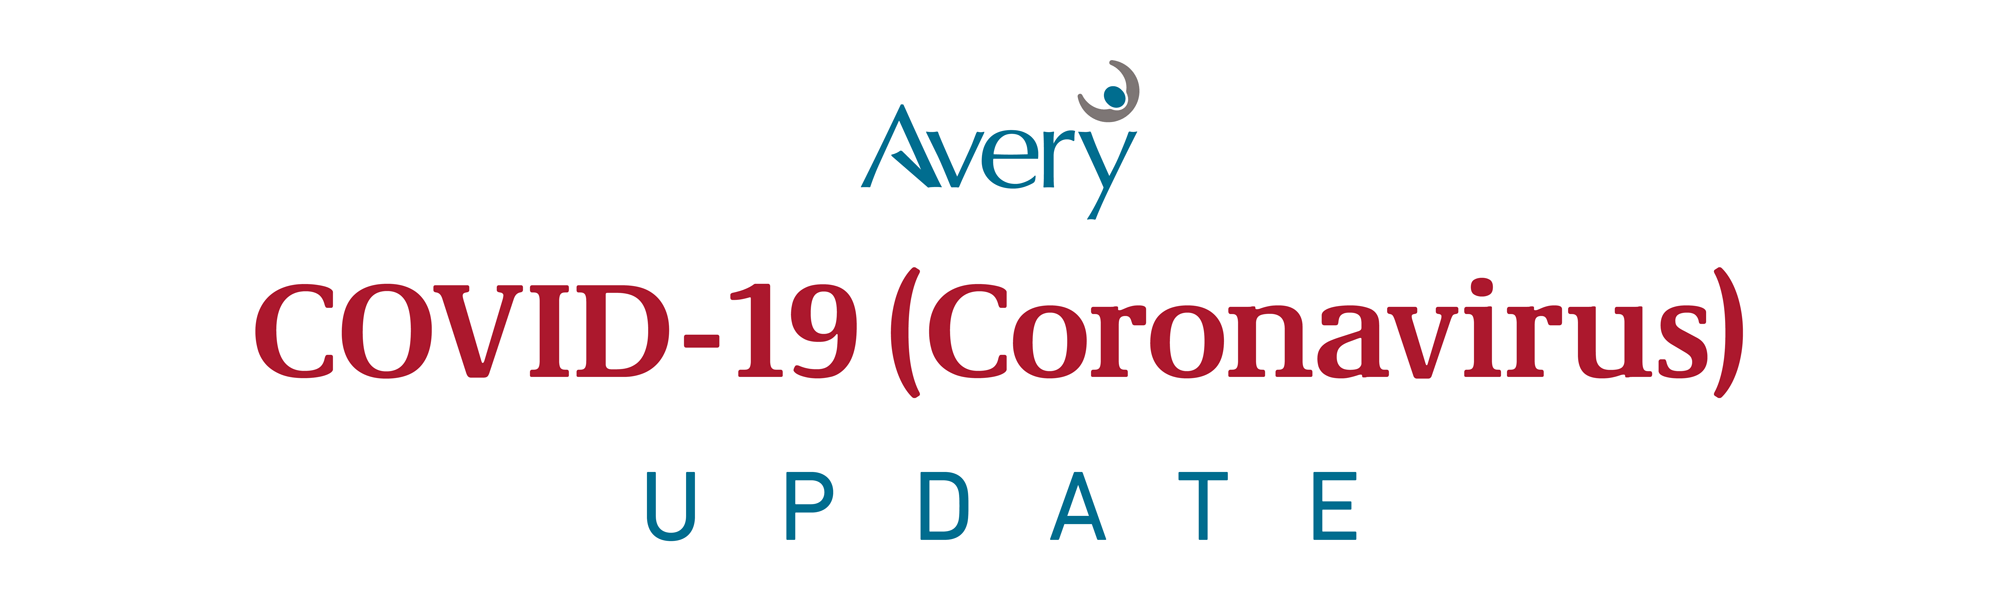 Avery Healthcare Coronavirus Covid-19 update